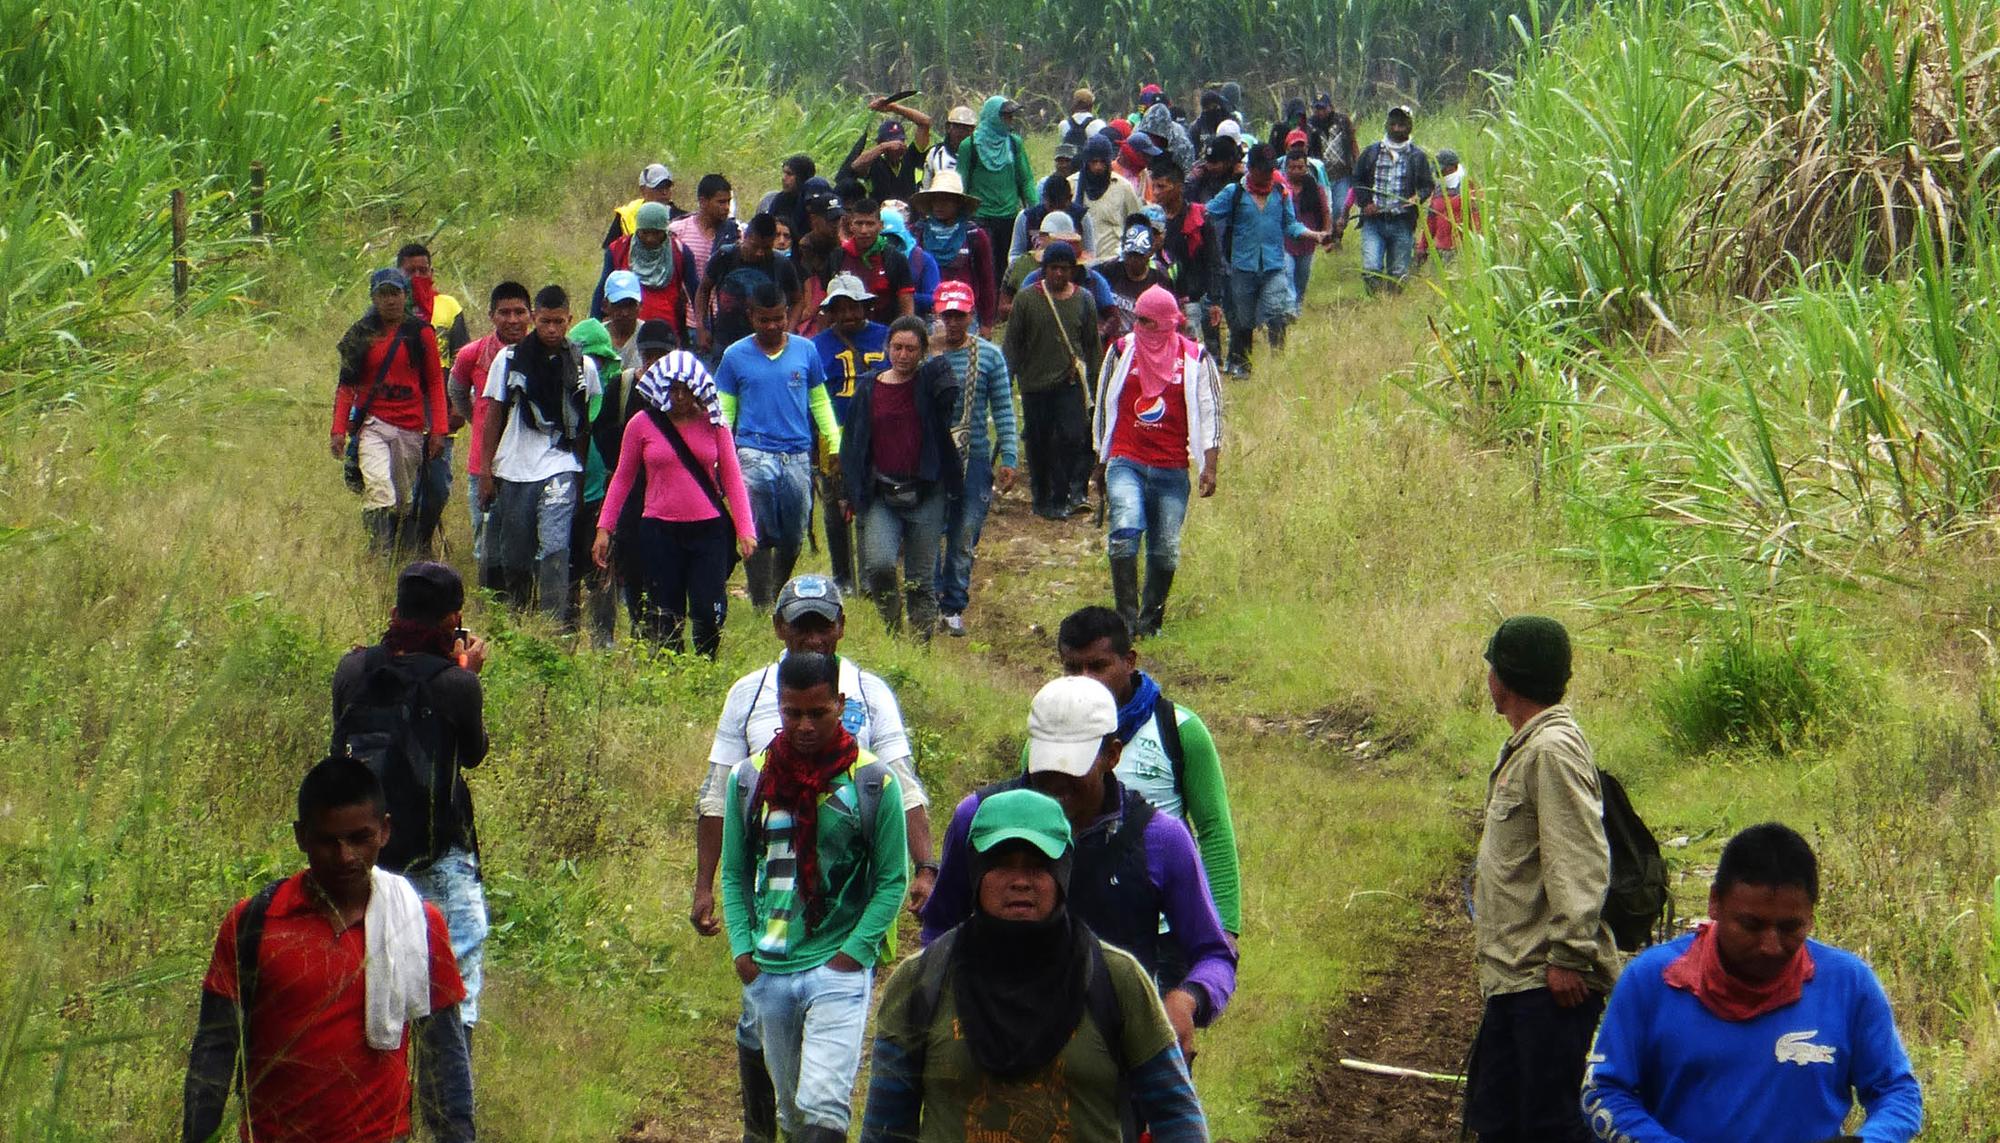 Proceso de liberación de tierras, tal como llaman las comunidad indígenas en el Cauca colombiano a la ocupación de fincas que pertenecían ancestralmente a sus pueblos.